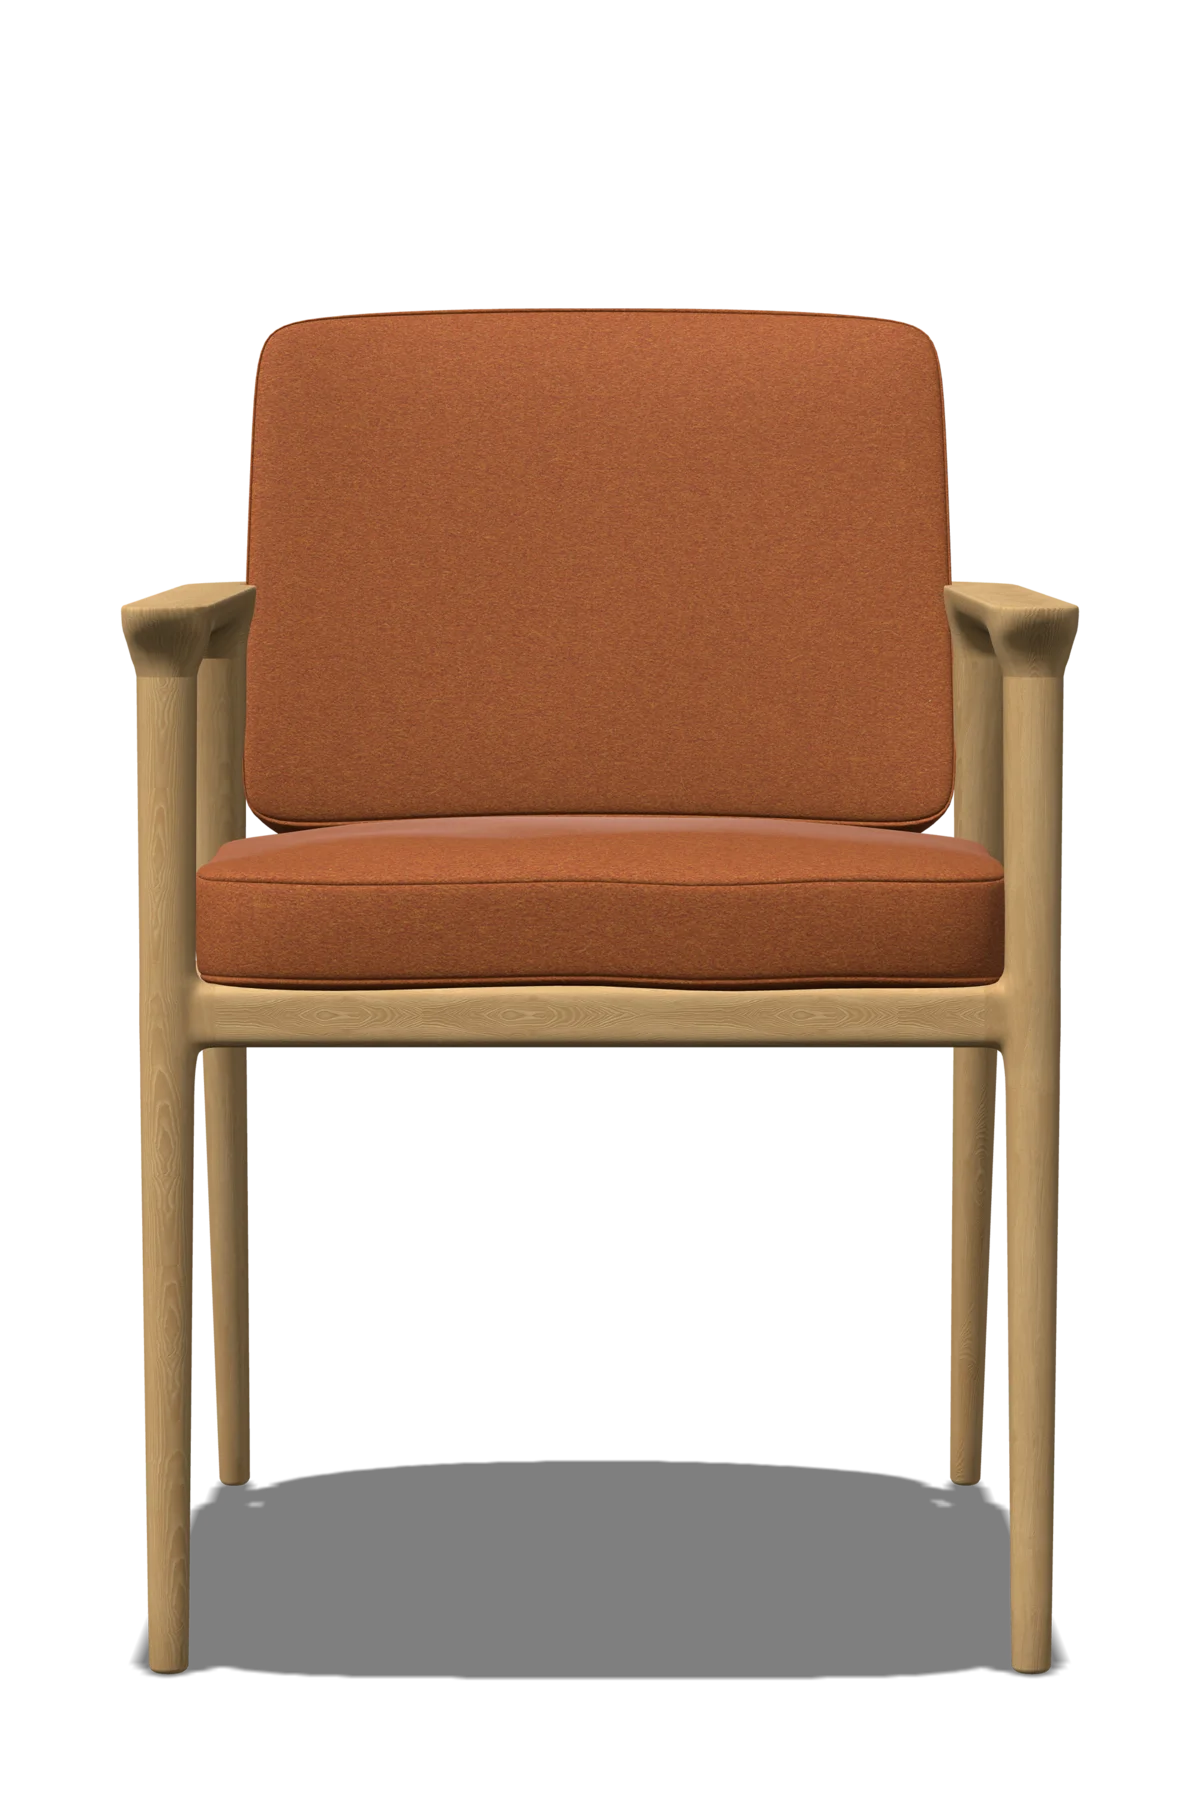 Zio Dining Chair orange front view